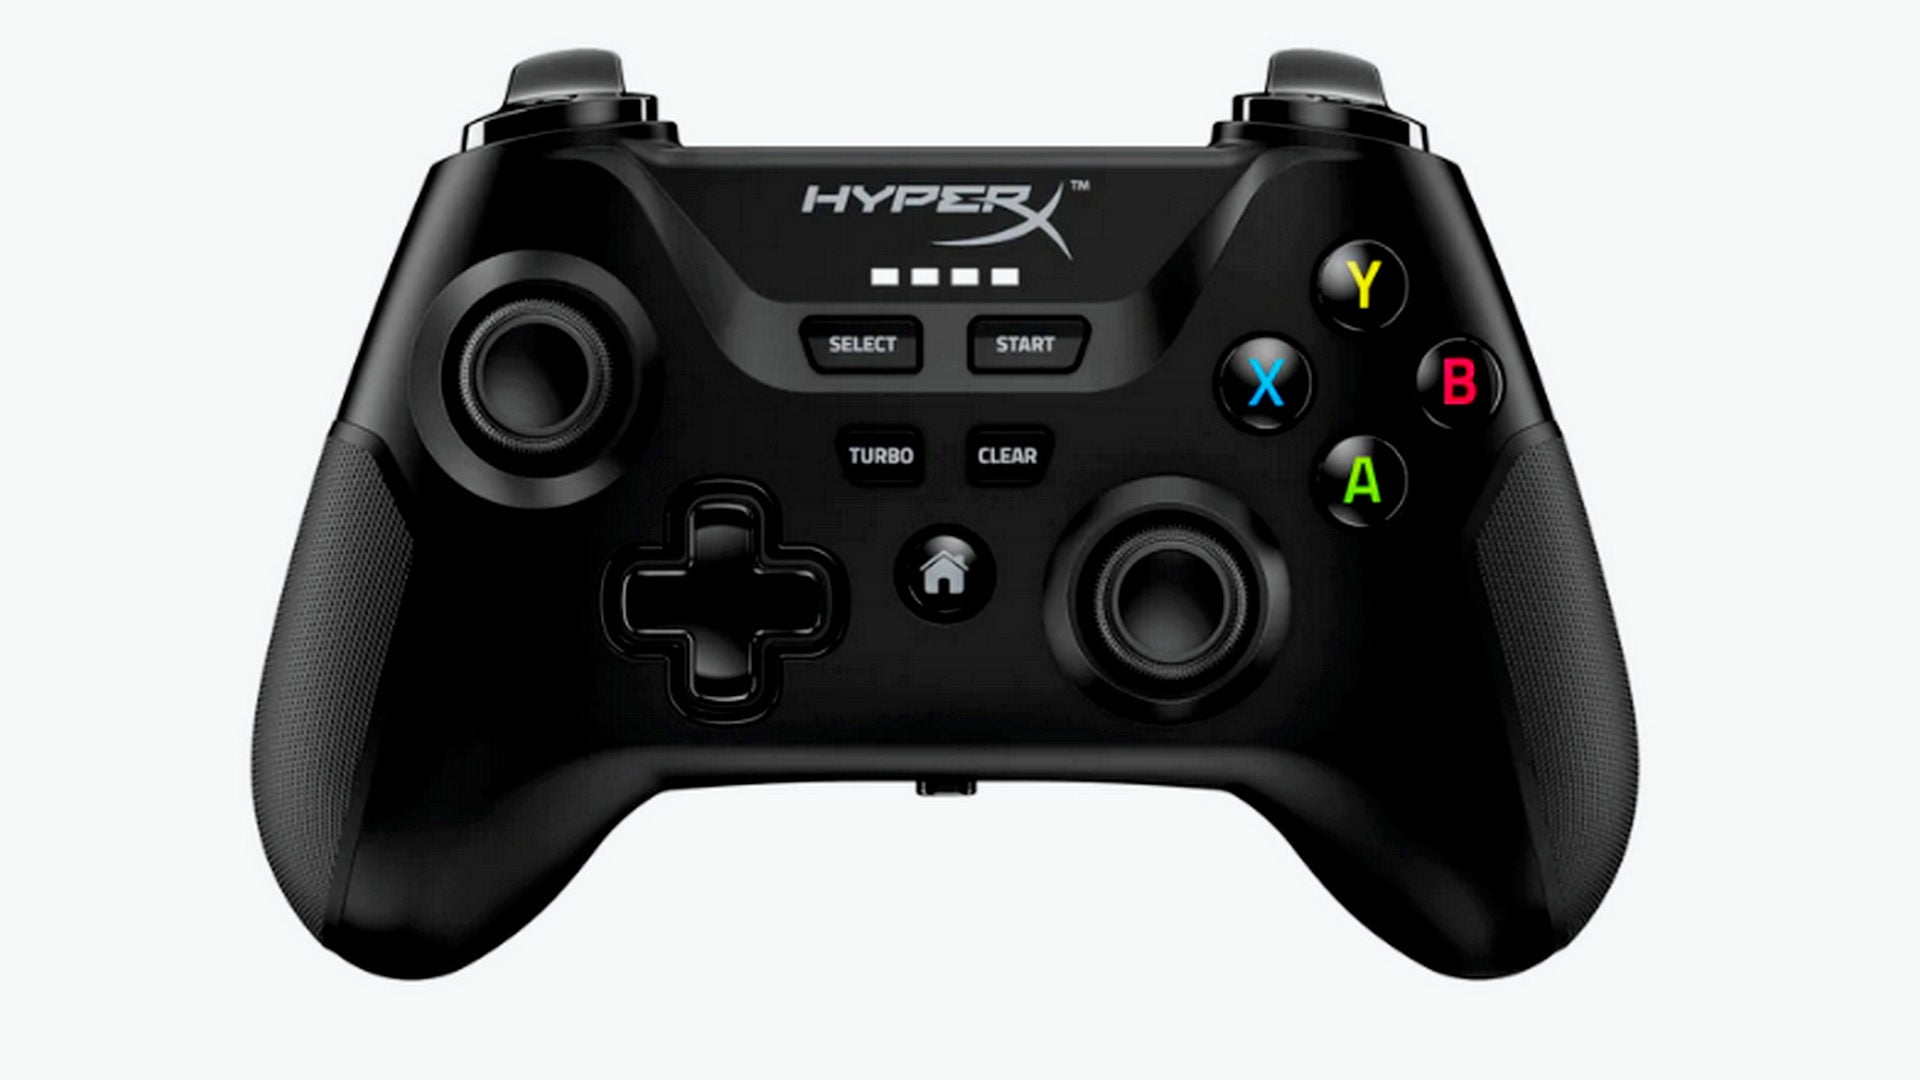 HyperX’s nieuwe Clutch Wireless Game Controller is nu beschikbaar en laat je langer spelen